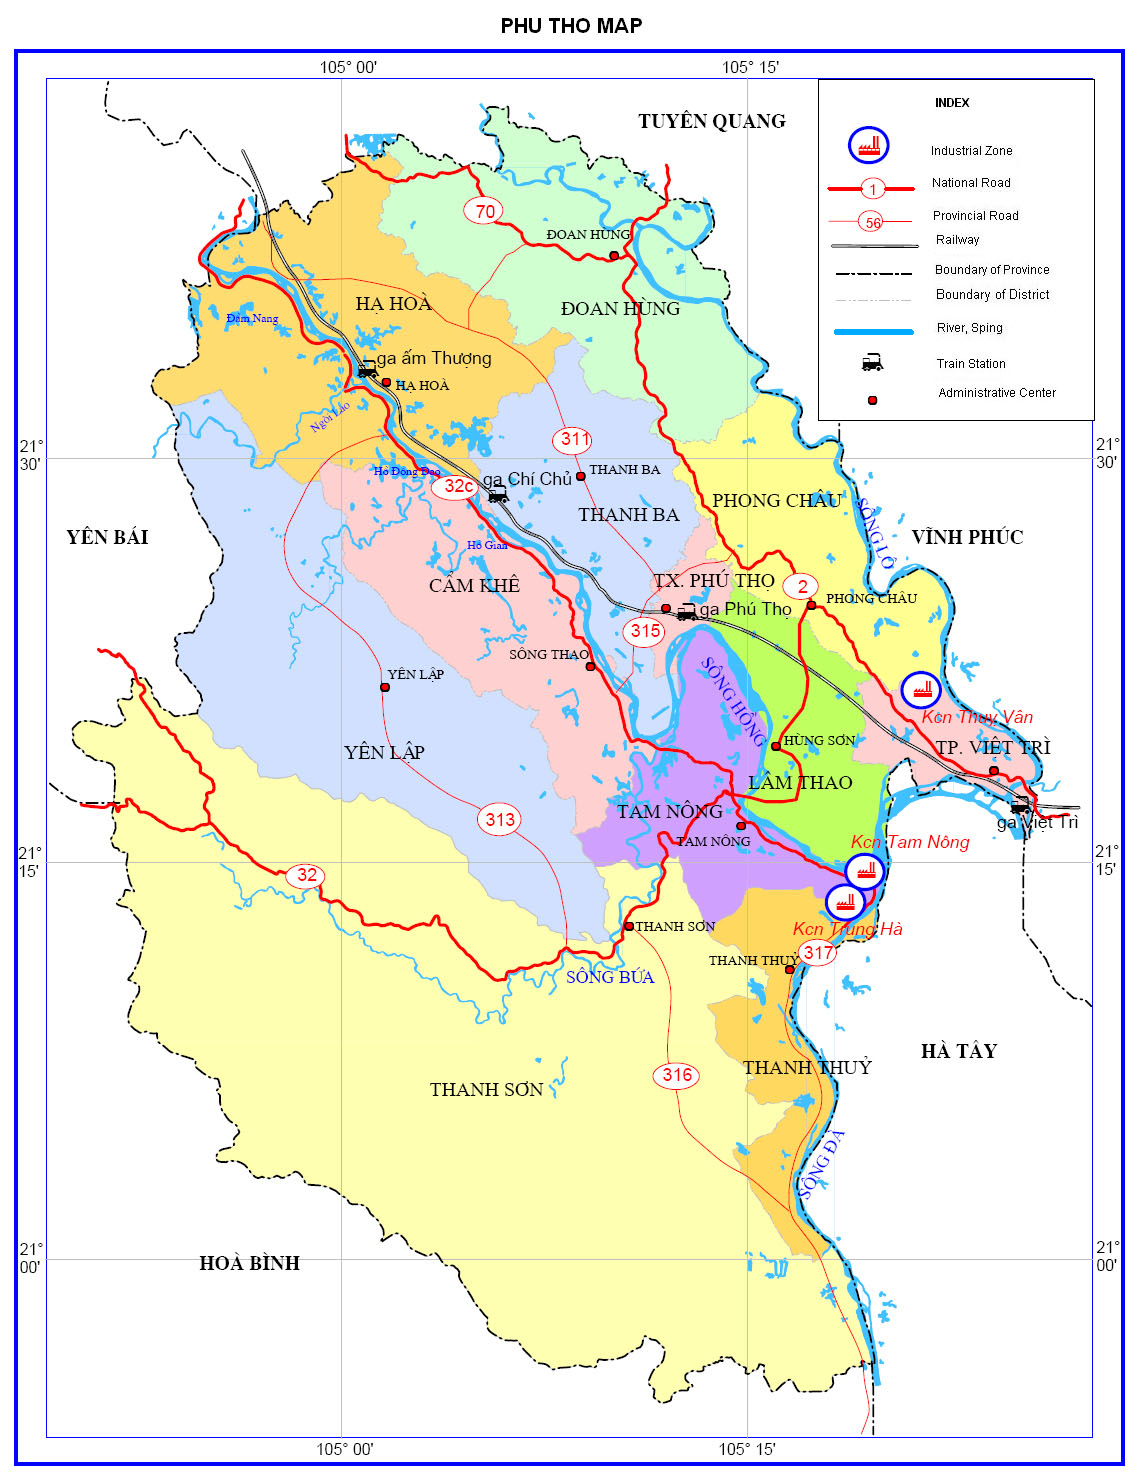 Bản đồ hành chính tỉnh Phú Thọ 2024: Khám phá bản đồ hành chính tỉnh Phú Thọ năm 2024 để cập nhật thông tin về các đơn vị hành chính trên địa bàn. Sự phát triển và thay đổi của tỉnh trong tương lai sẽ được thể hiện rõ ràng trên bản đồ này.